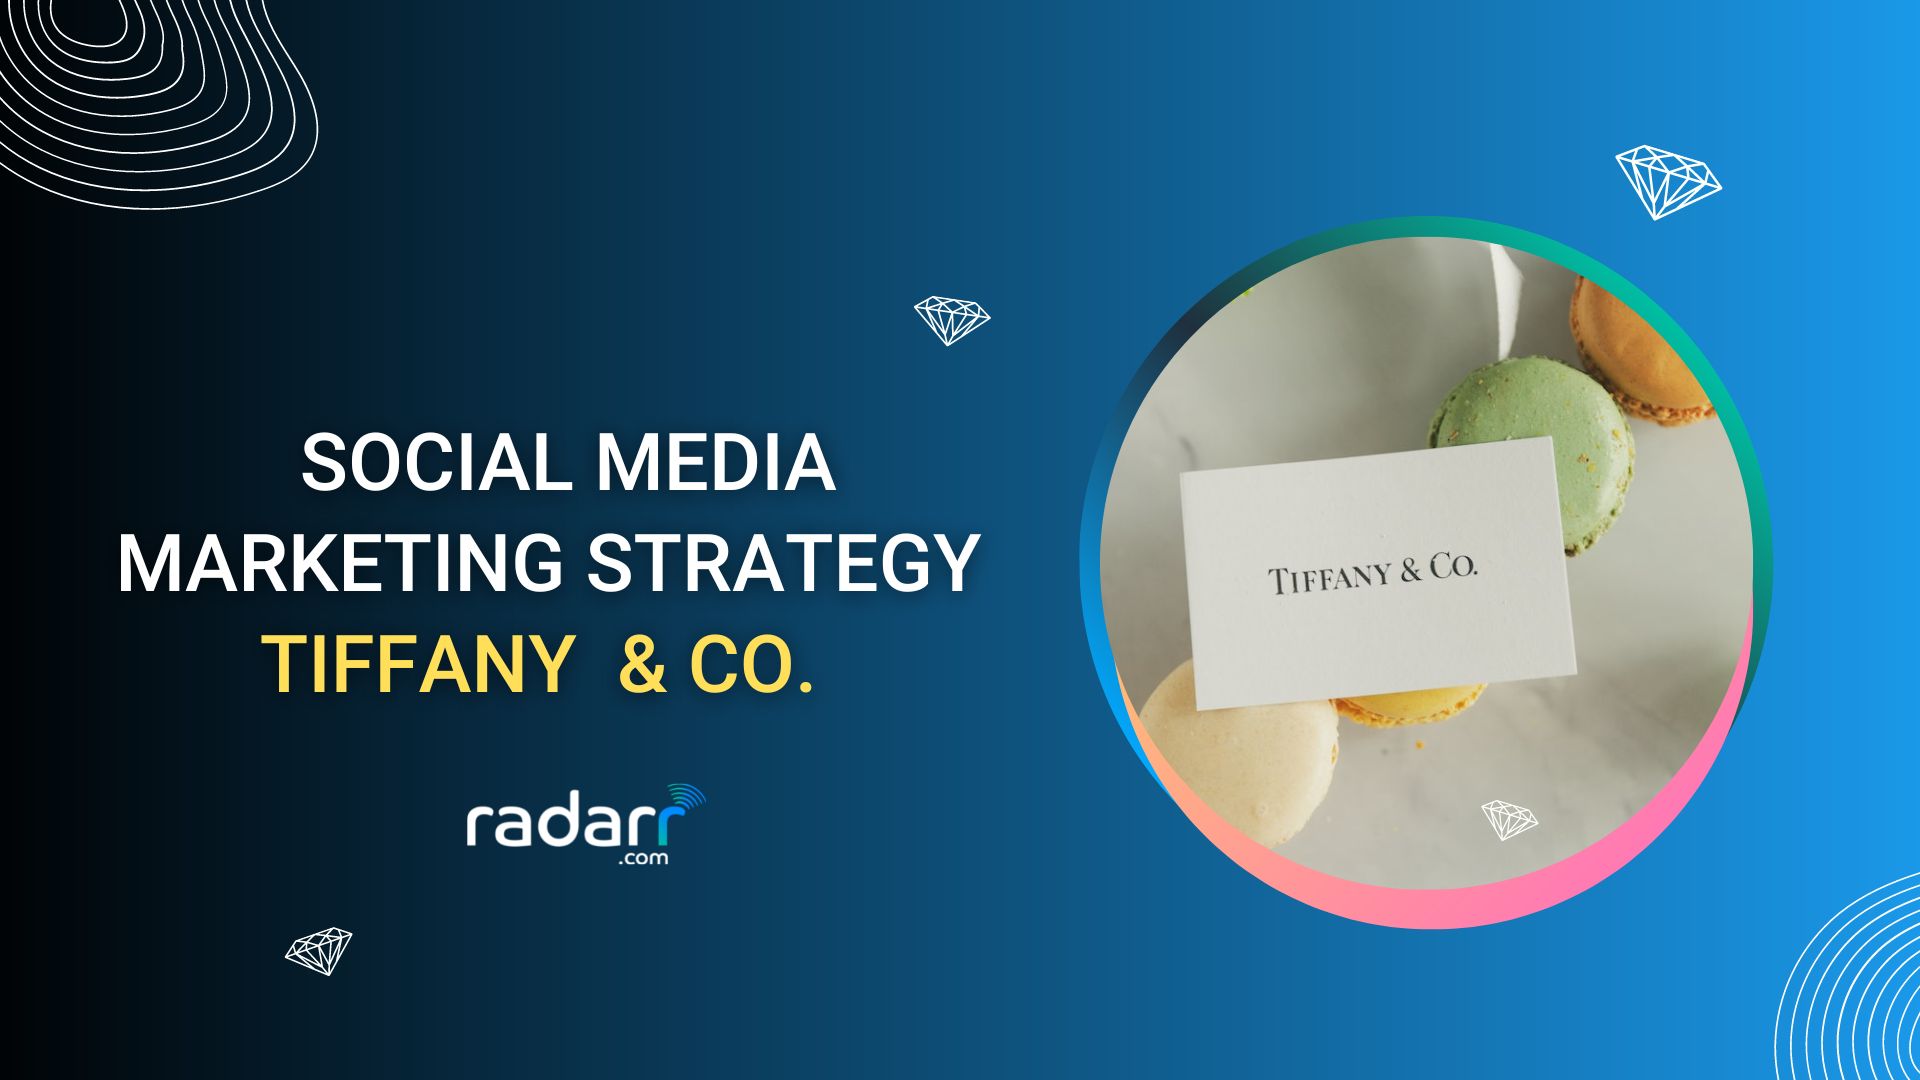 social media marketing strategy of Tiffany & Co.